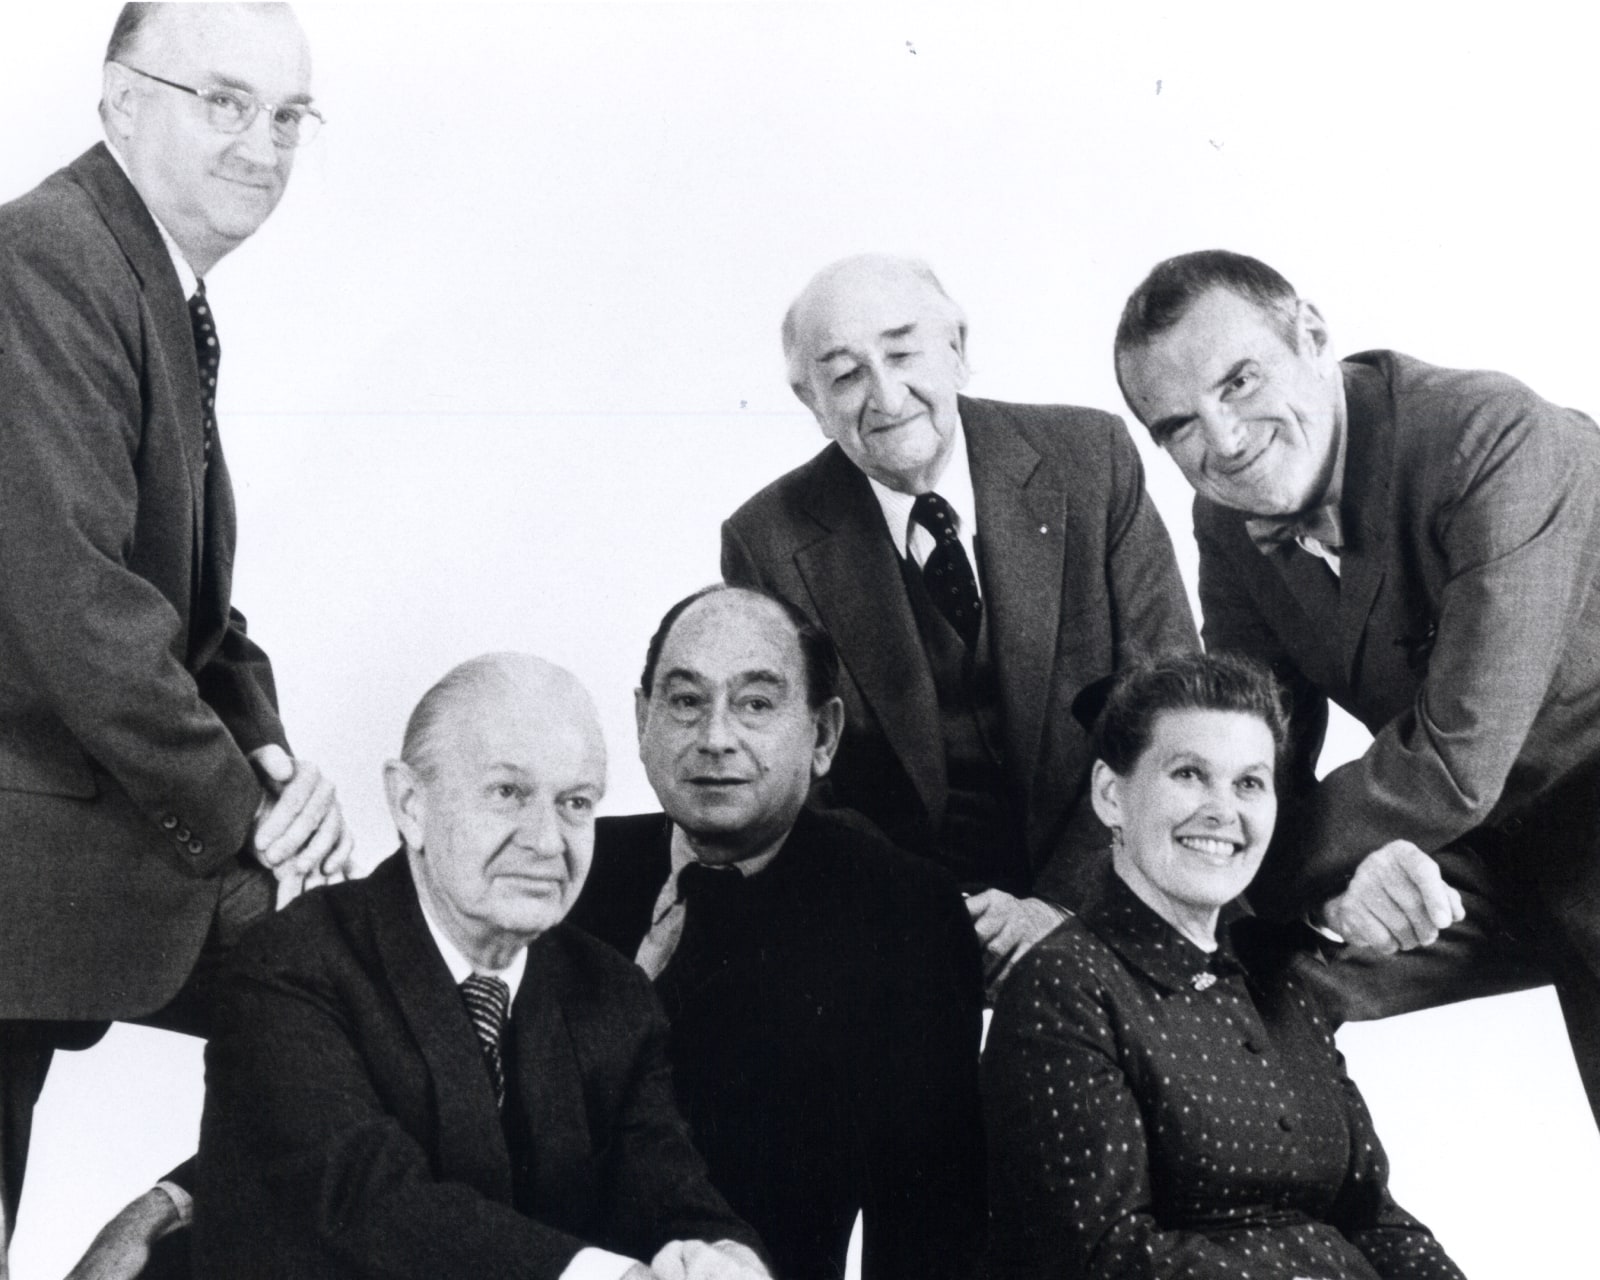 Il fondatore D.J. De Pree, il direttore di progettazione George Nelson e i designer Robert Propst, Alexander Girard e Ray e Charles Eames.